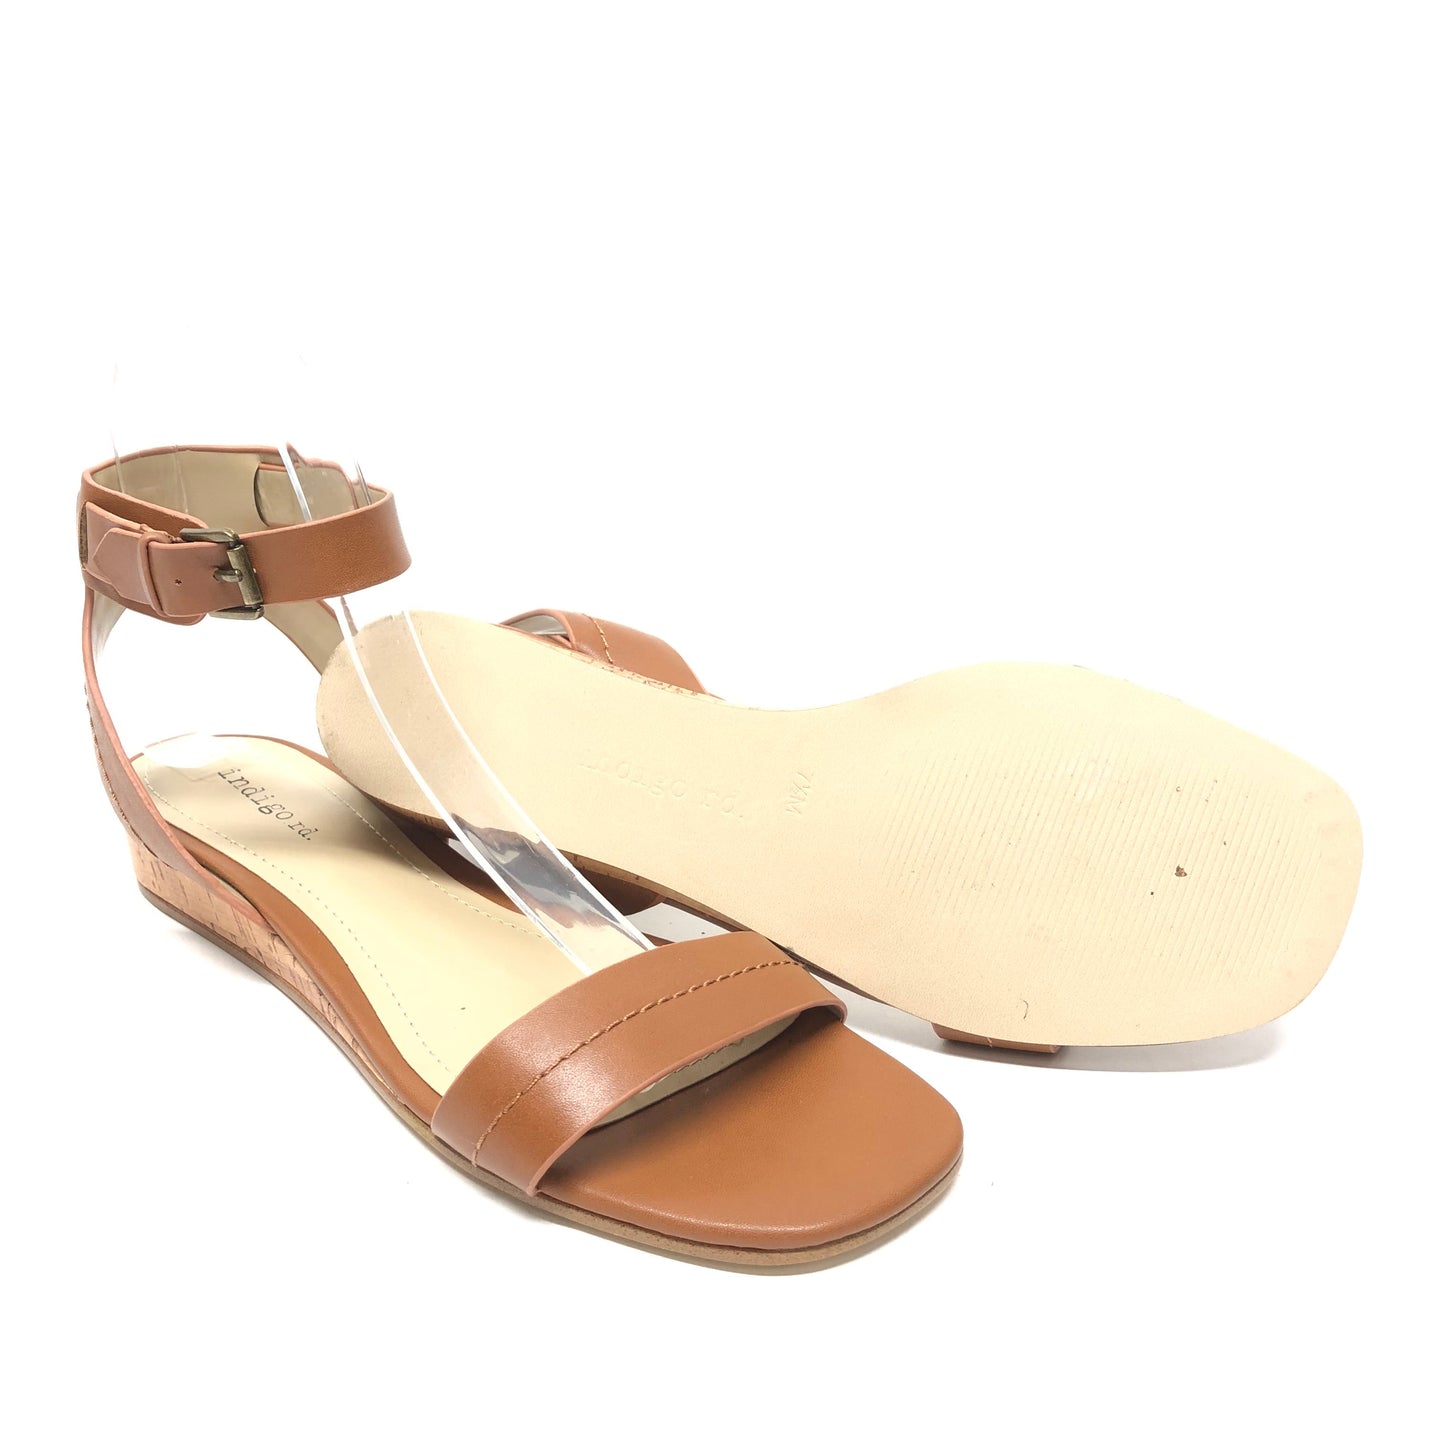 Sandals Heels Wedge By Indigo Rd  Size: 7.5